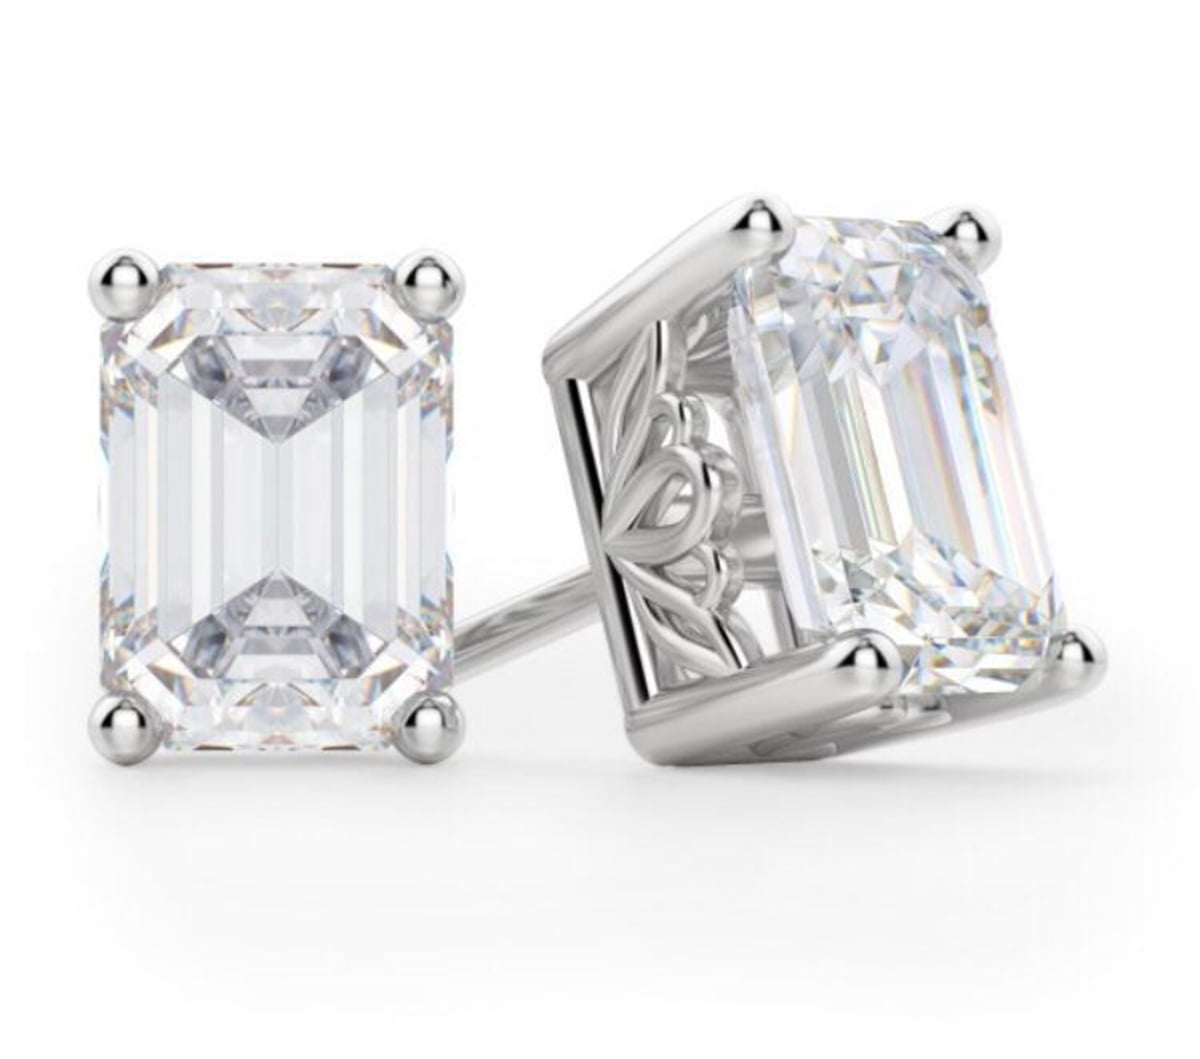 Emerald Cut Diamond Stud Earrings in 10k white gold